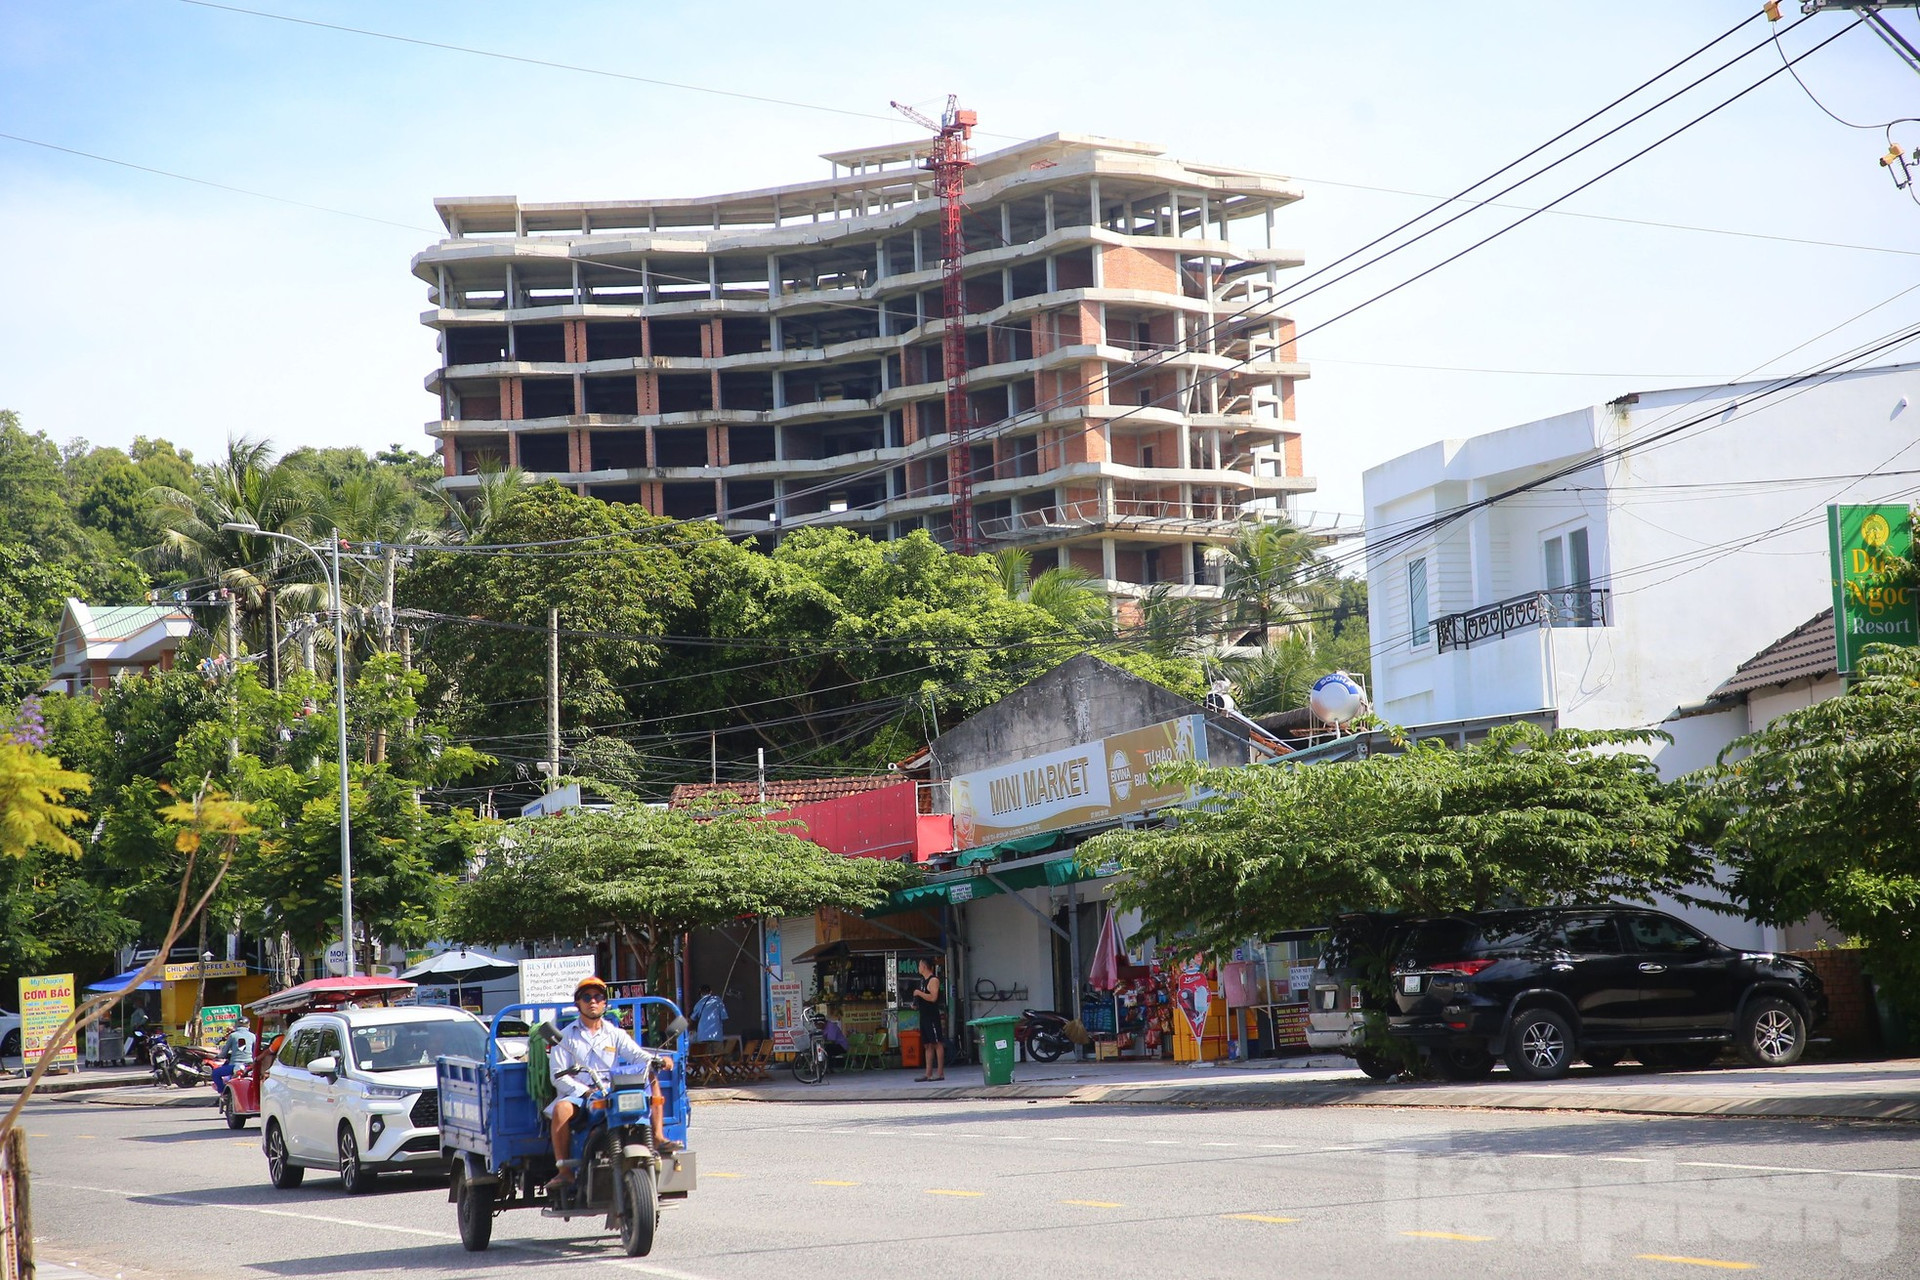 Tiết lộ lý do chưa cưỡng chế khách sạn 12 tầng xây trái phép ở Phú Quốc ảnh 6